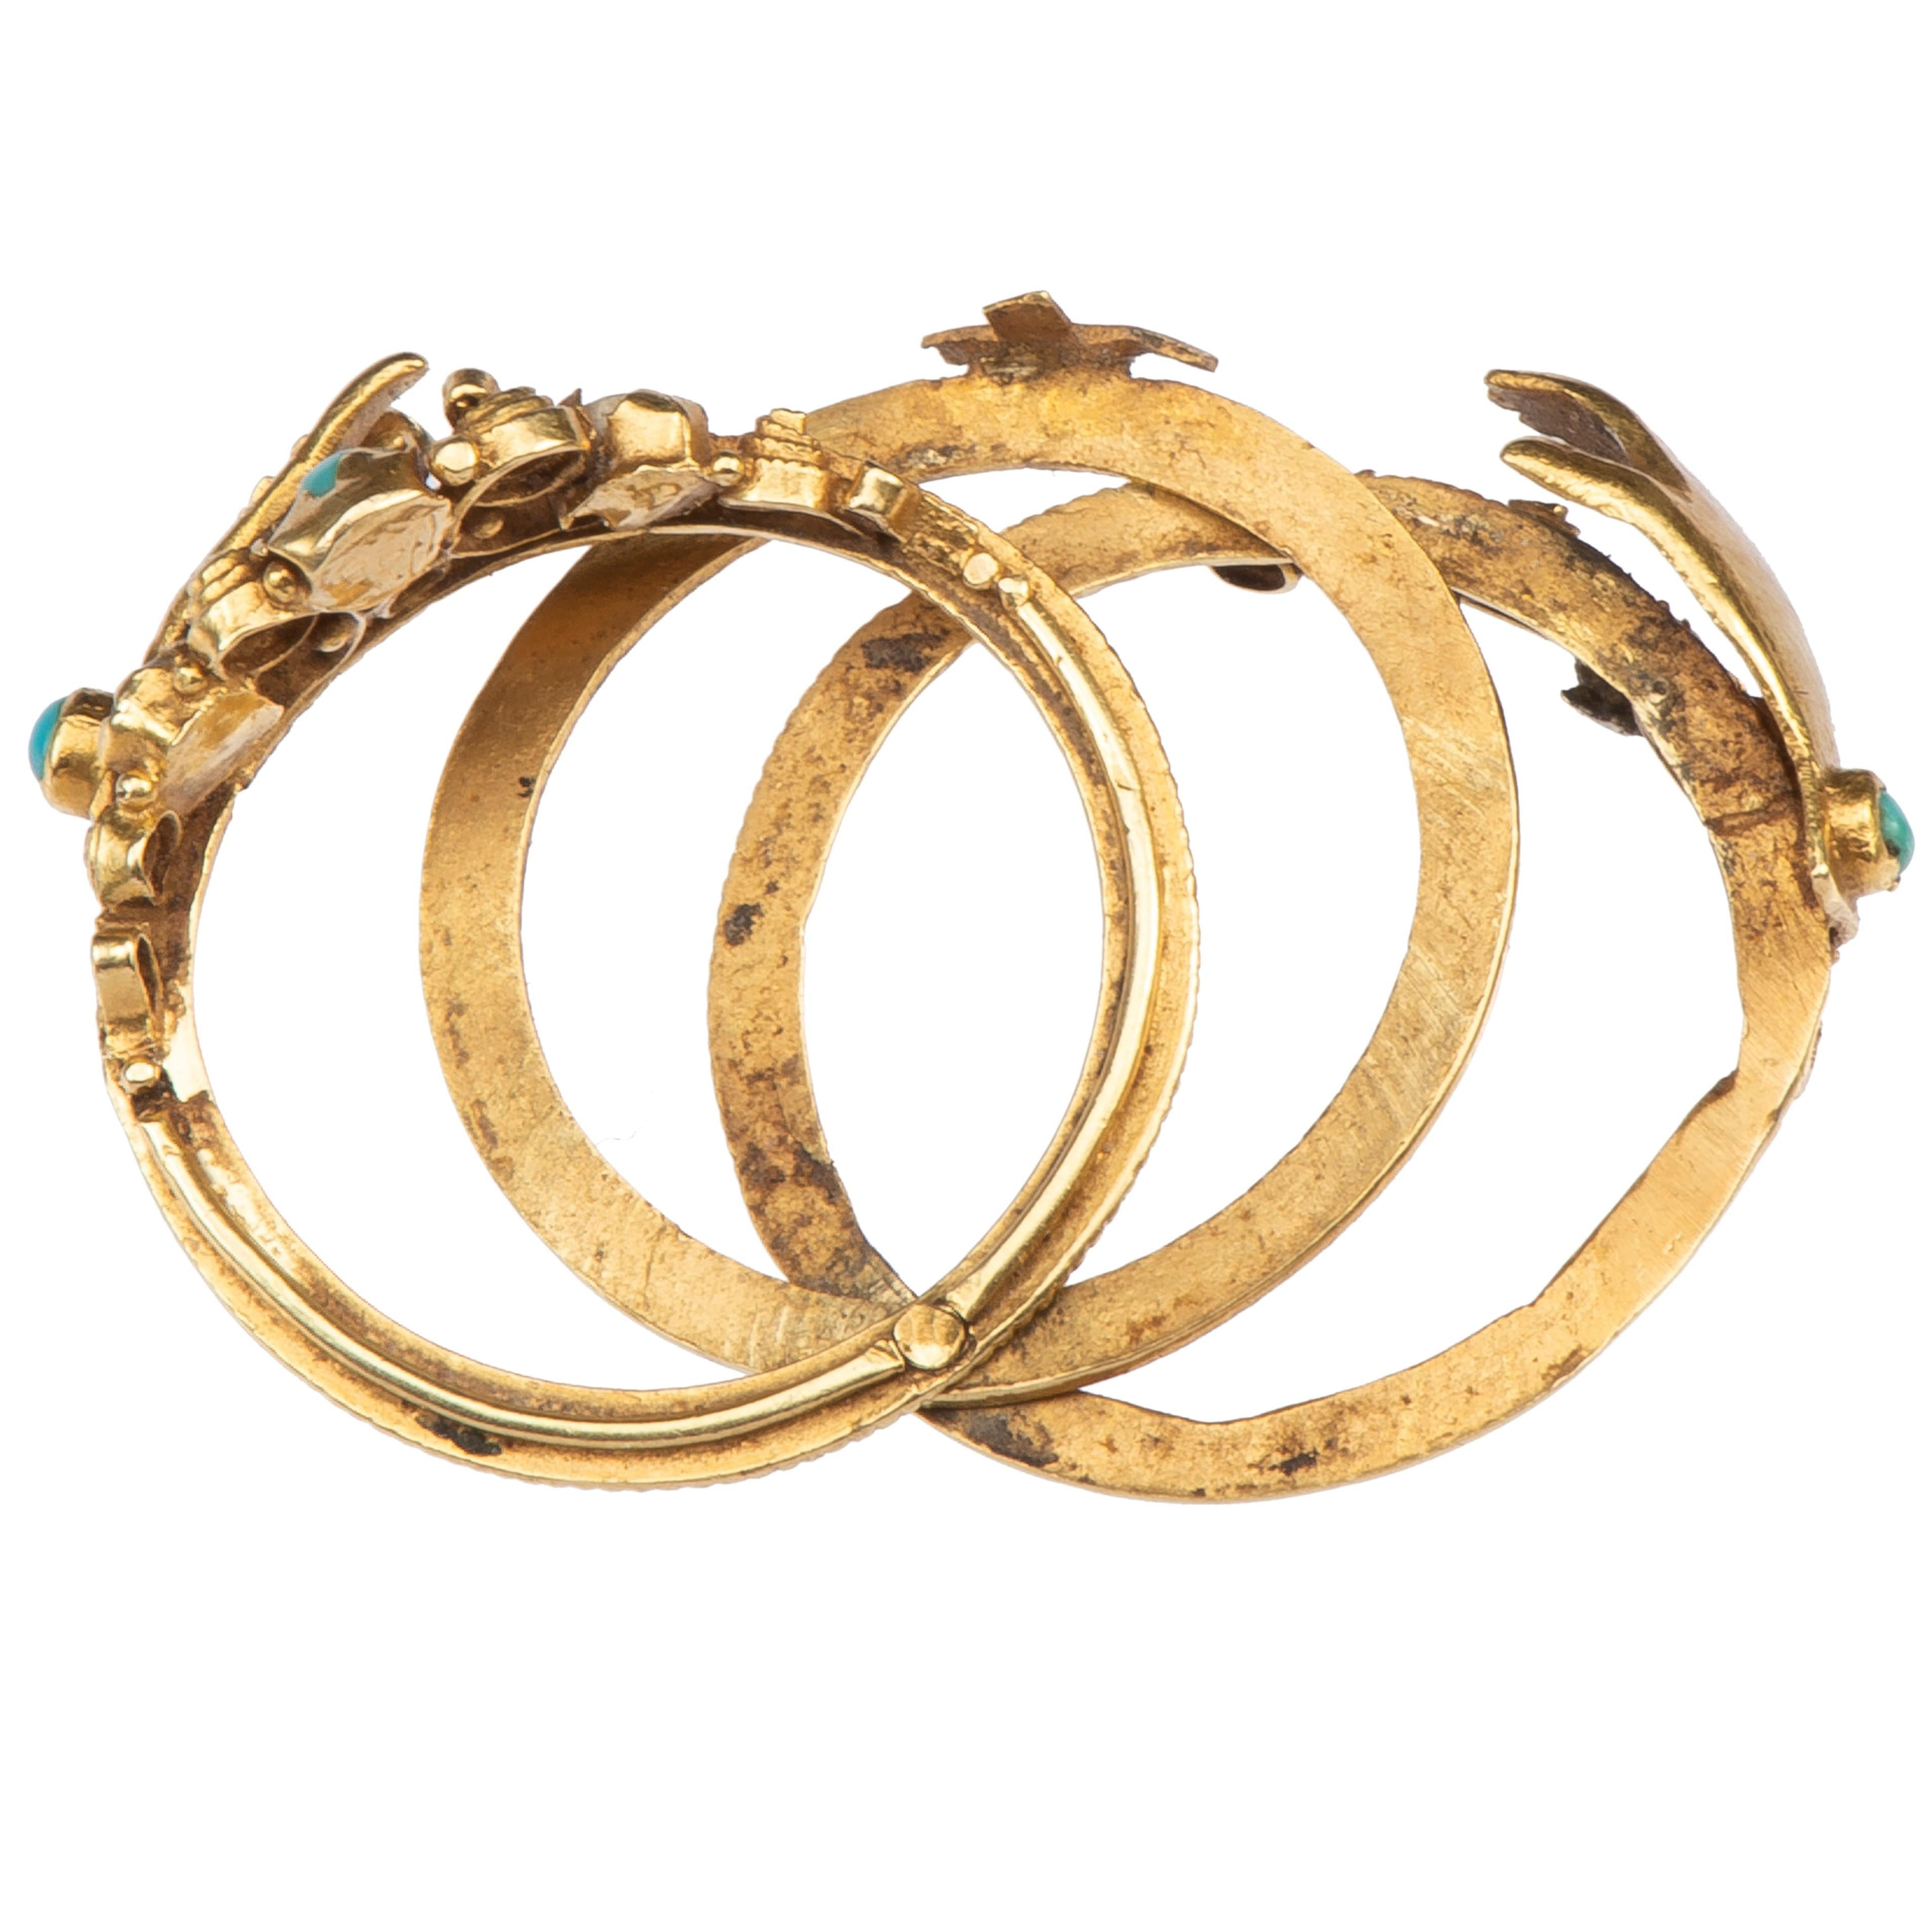 Antique Gold Fede Gimmel Ring 2